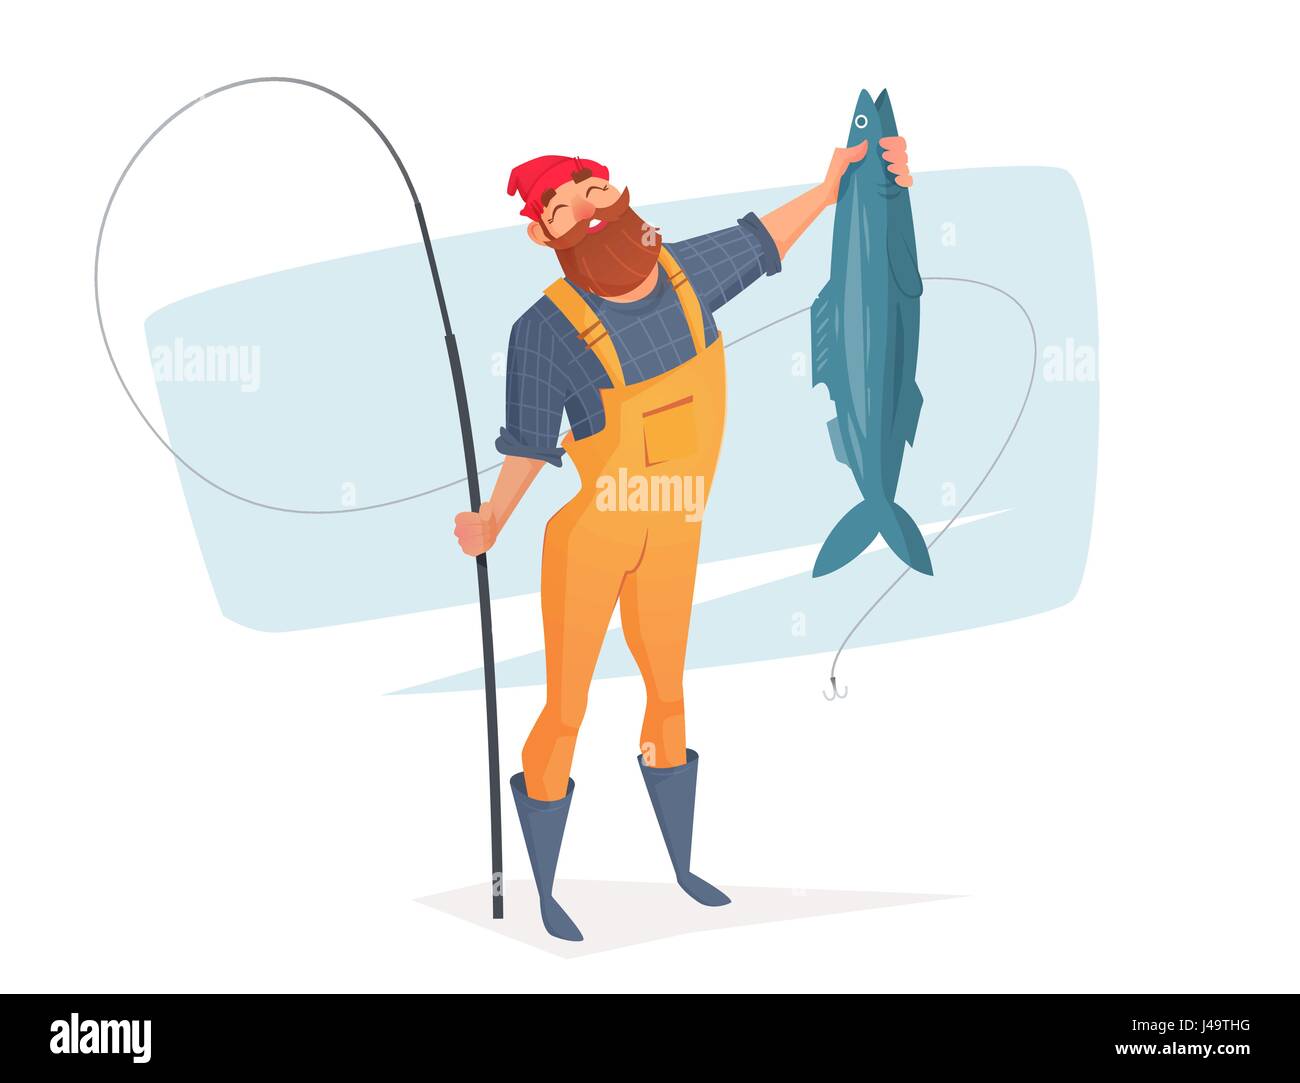 Peces en una red de pesca vectorial ilustración de dibujo a mano